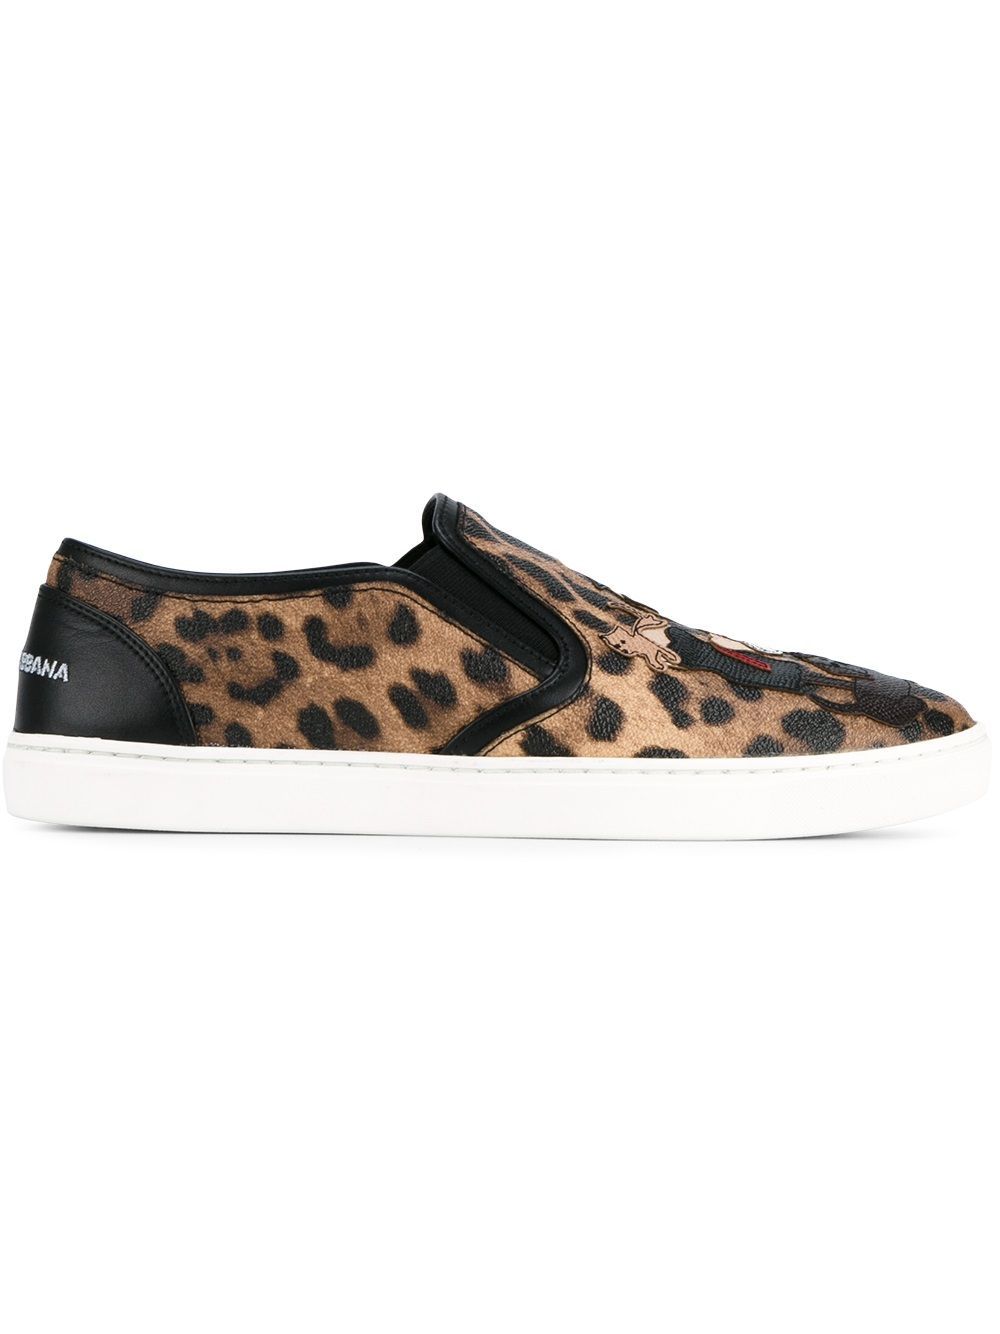 Dolce & Gabbana leopard slip on leather sneakers - Nude & Neutrals | FarFetch US